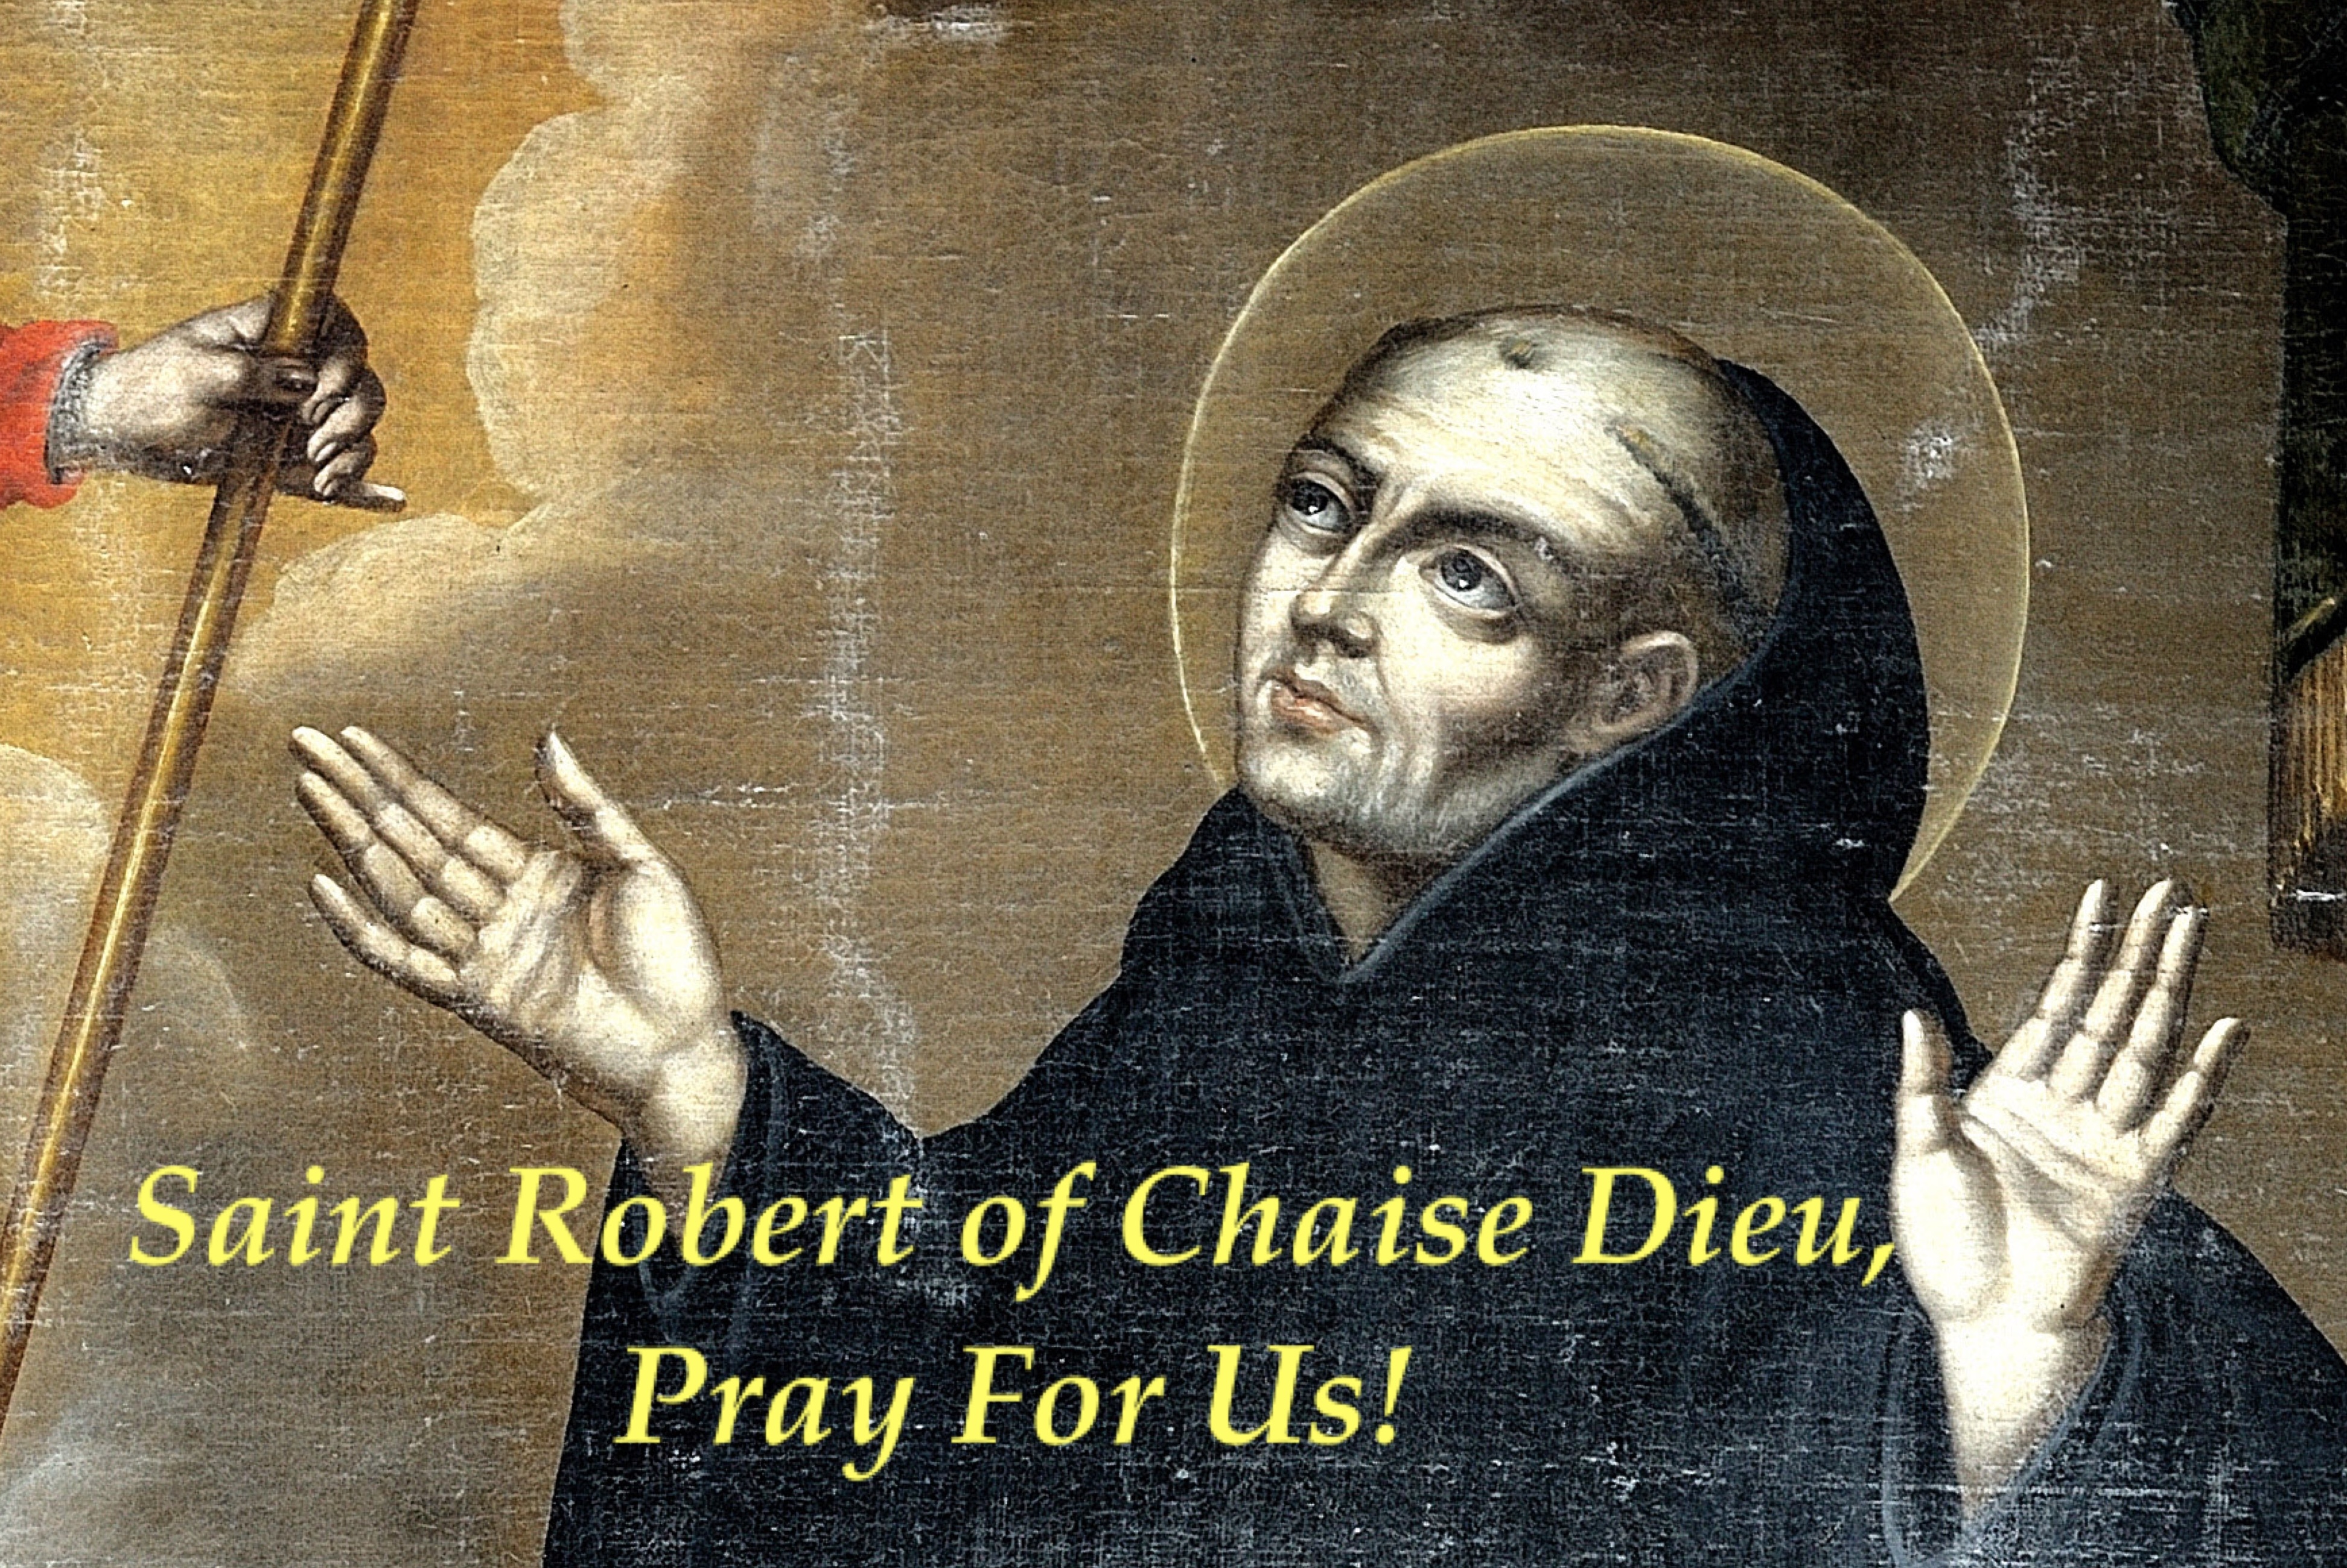 17th April - Saint Robert of Chaise Dieu